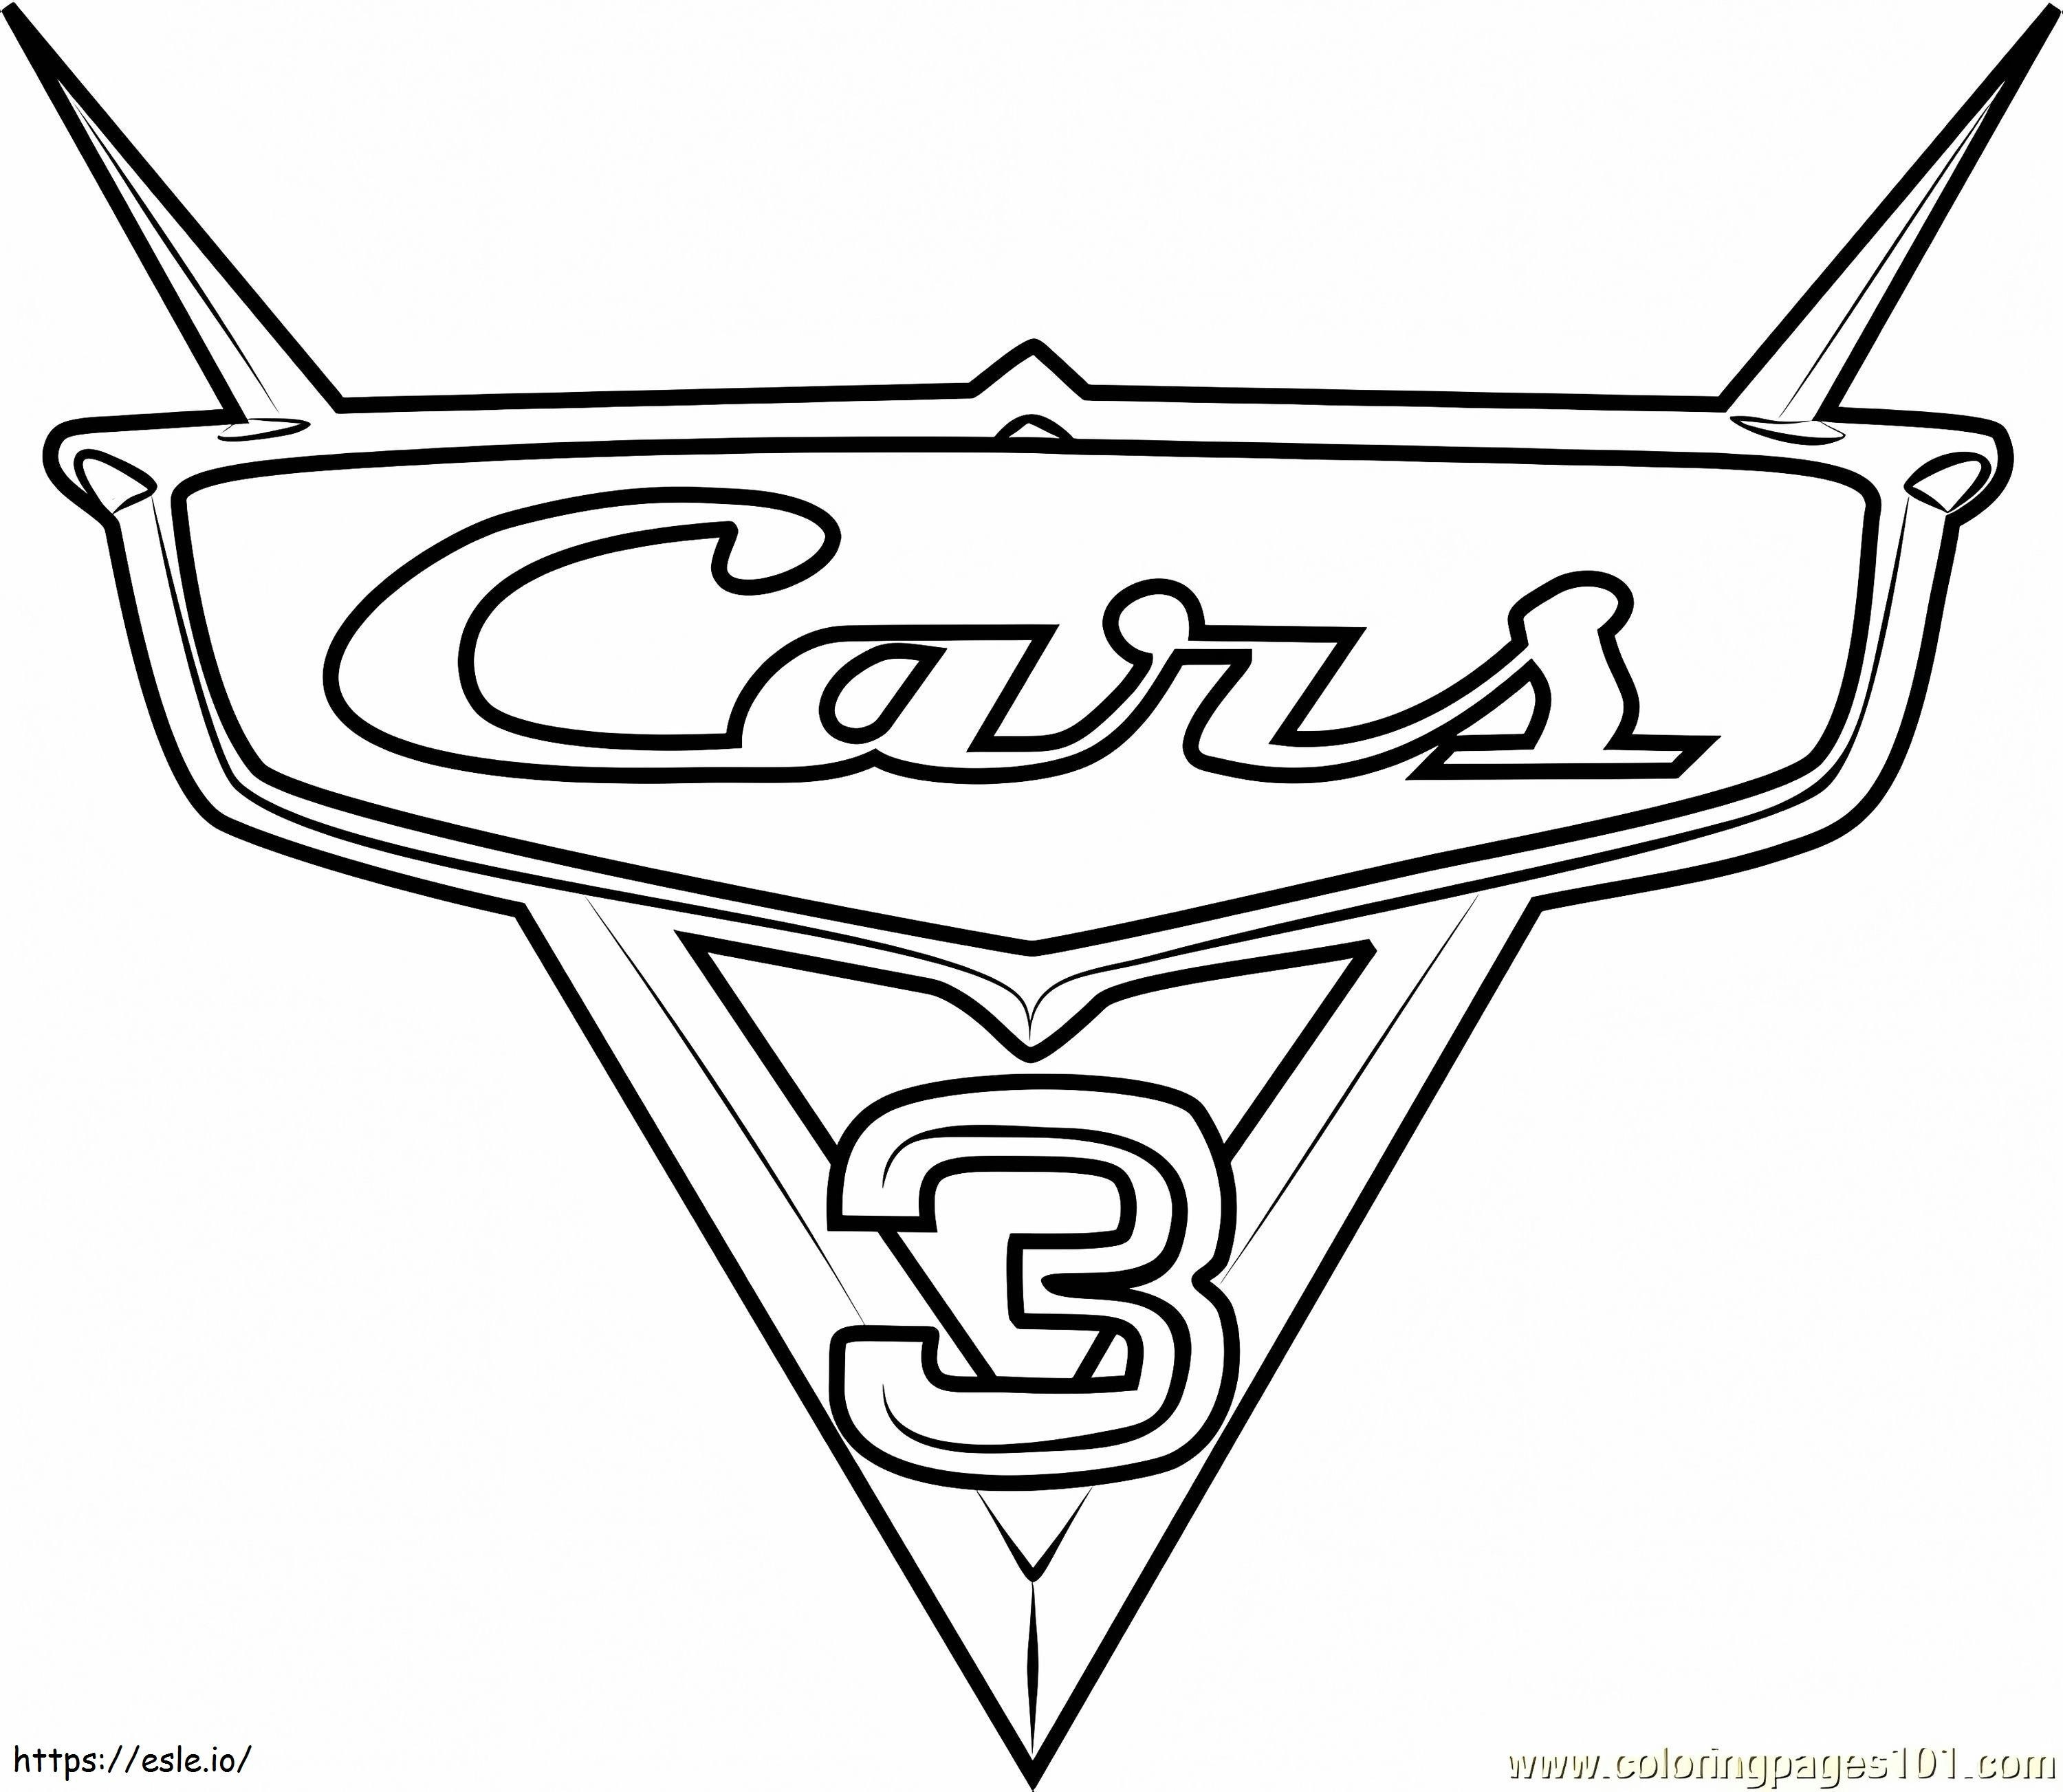 Coloriage _Cars 3 Logo de Cars 31 à imprimer dessin